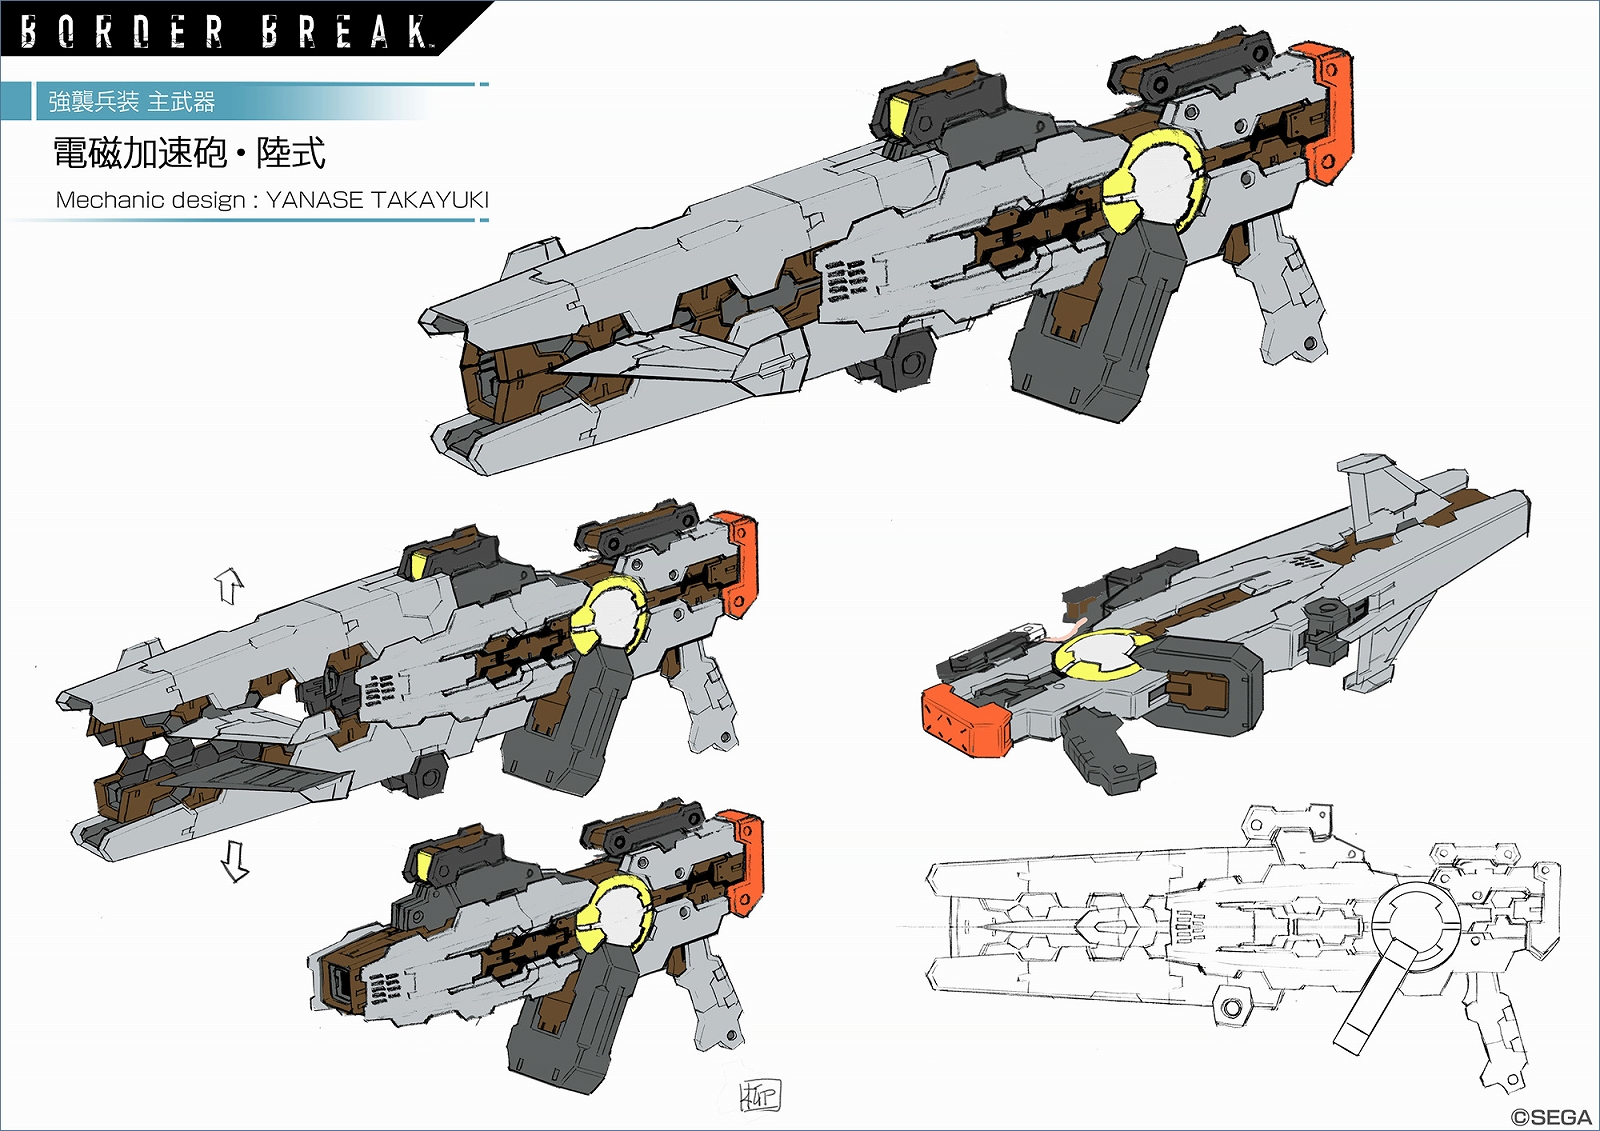 Ps4版 ボーダーブレイク メカニックデザイナー 柳瀬敬之氏がデザインしたコラボ武器が登場